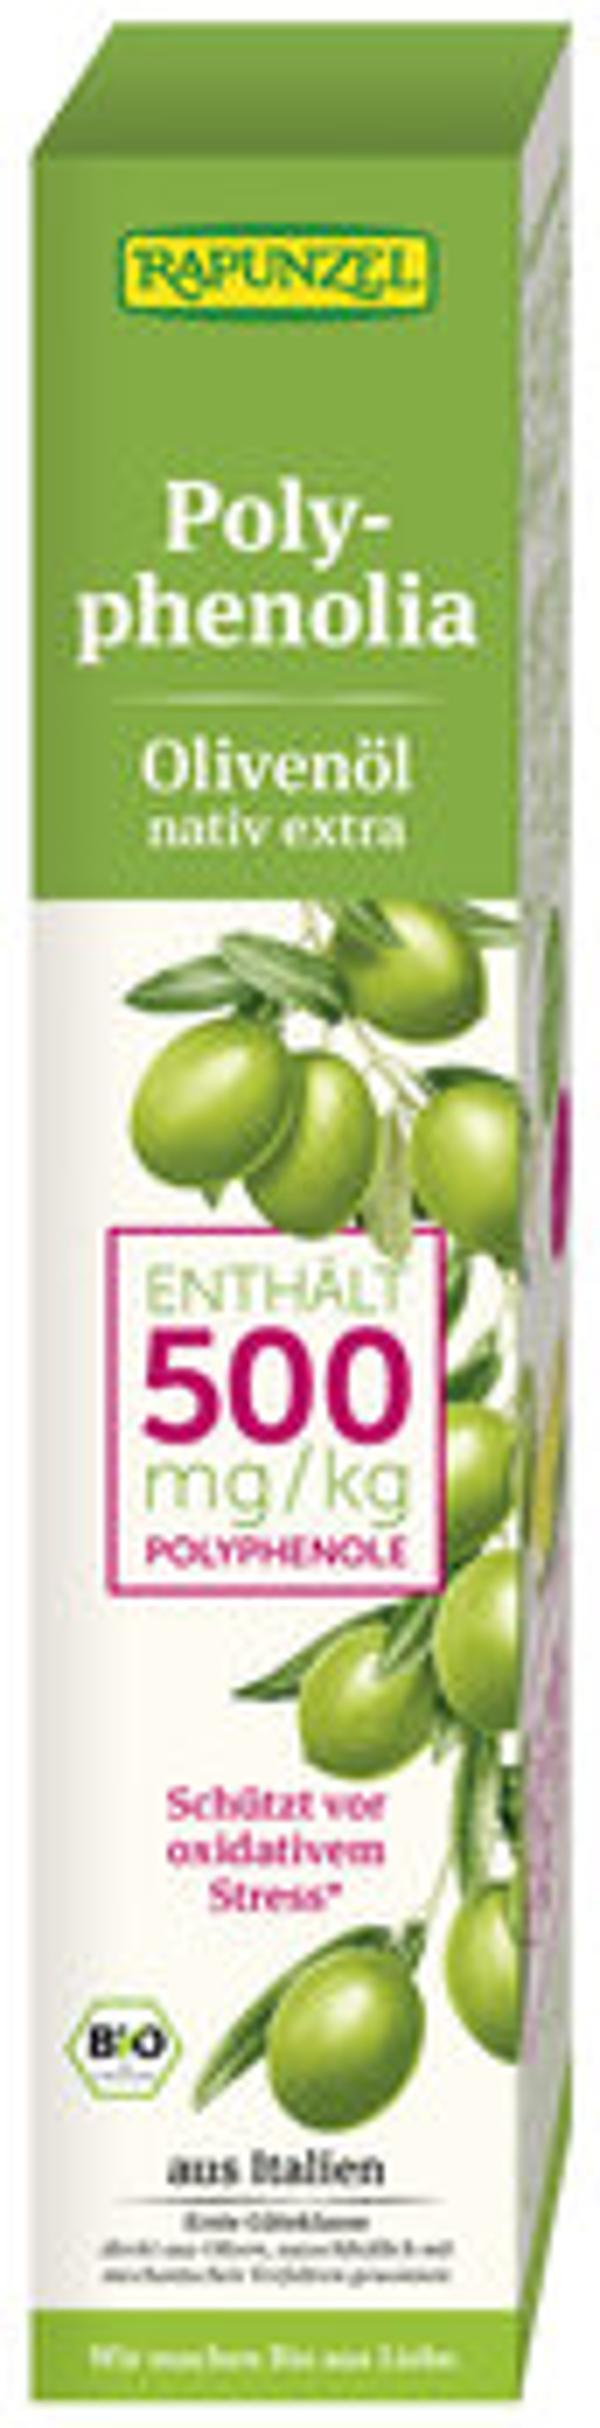 Produktfoto zu Olivenöl Polyphenolia 500, nativ extra, 250 ml